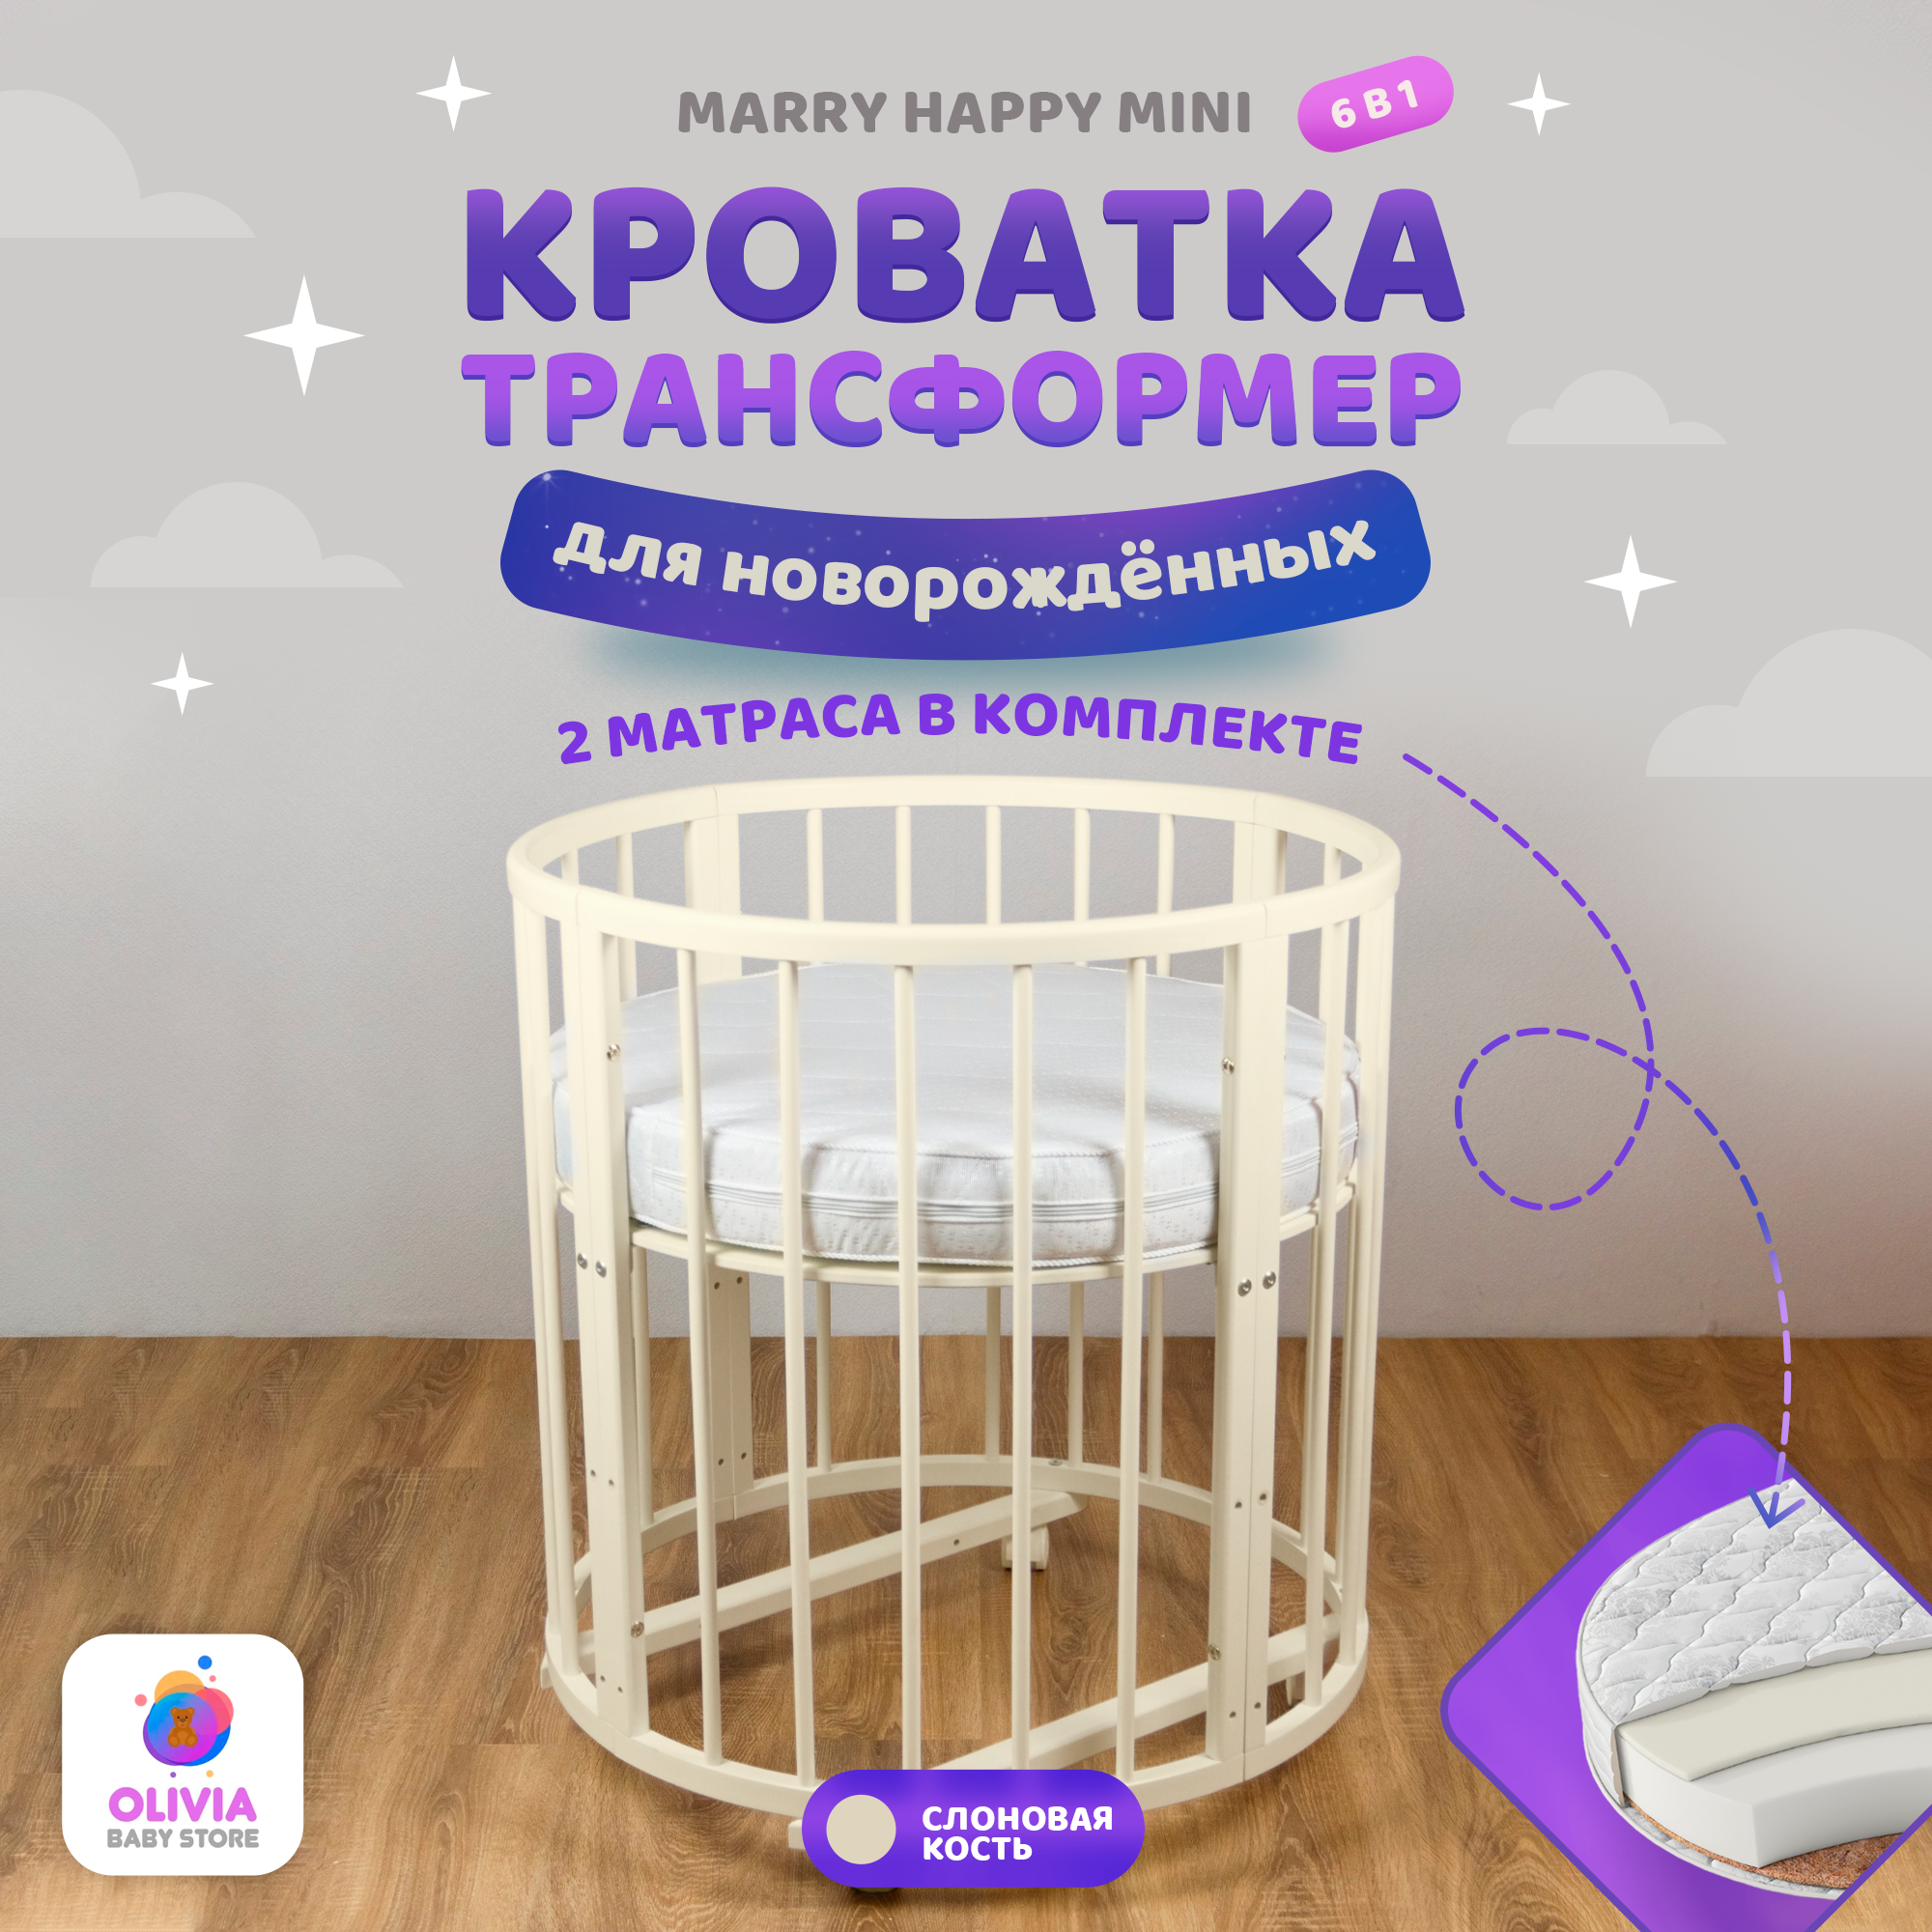 Кроватка трансформер для новорожденных 6 в 1 Merry Happy Mini слоновая кость + комплект матрасов